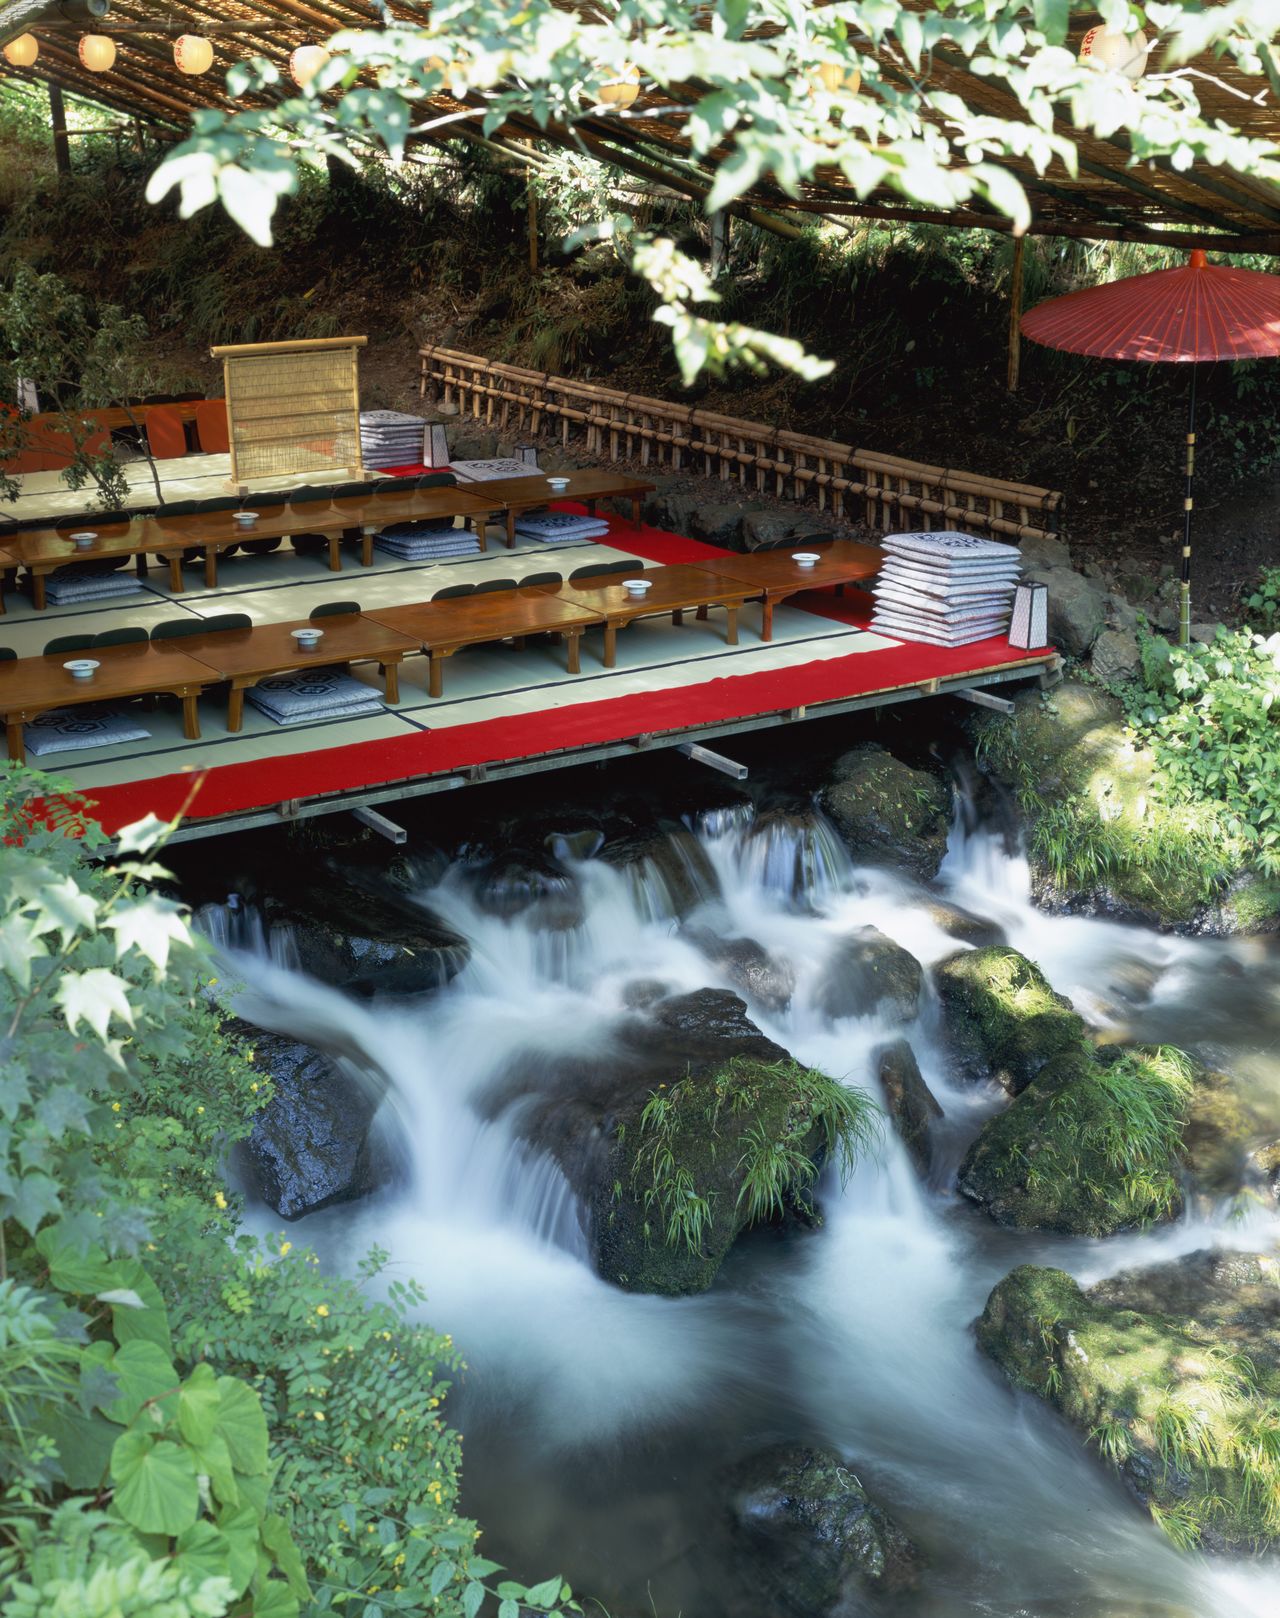 Une plateforme permet de profiter de la fraicheur des eaux courantes de la rivière Kibune tout en se restaurant. Photo faite en 2009. (Jiji)